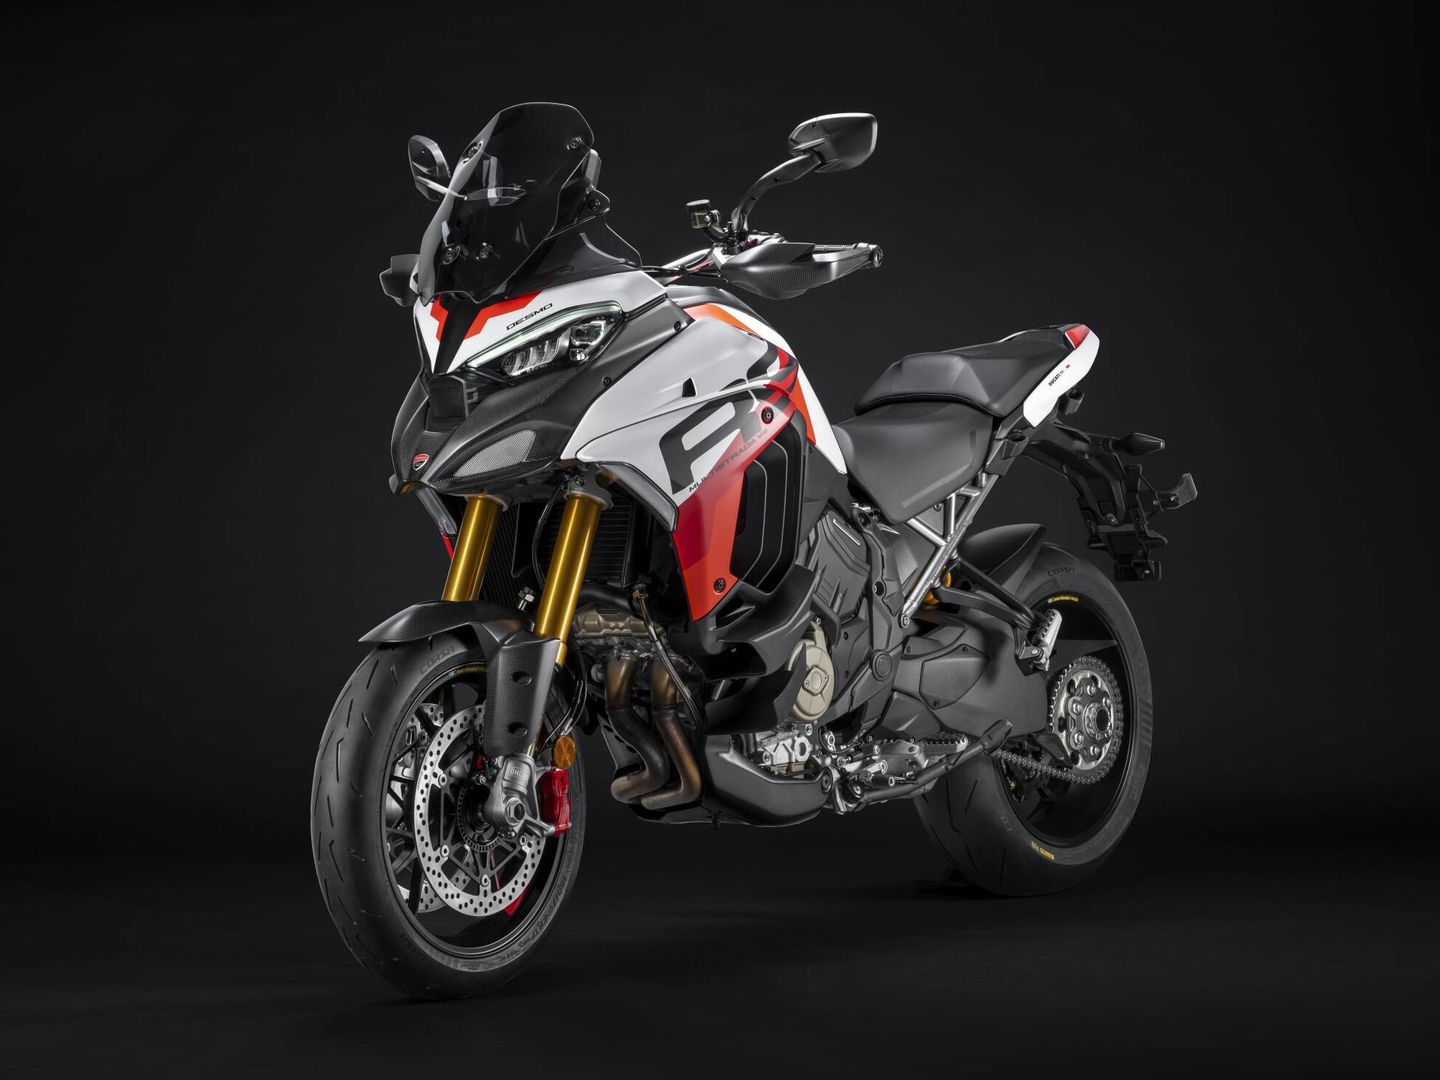 La Ducati Multistrada V4 RS, otro ejemplo de moto trail llevada a la máxima expresión.